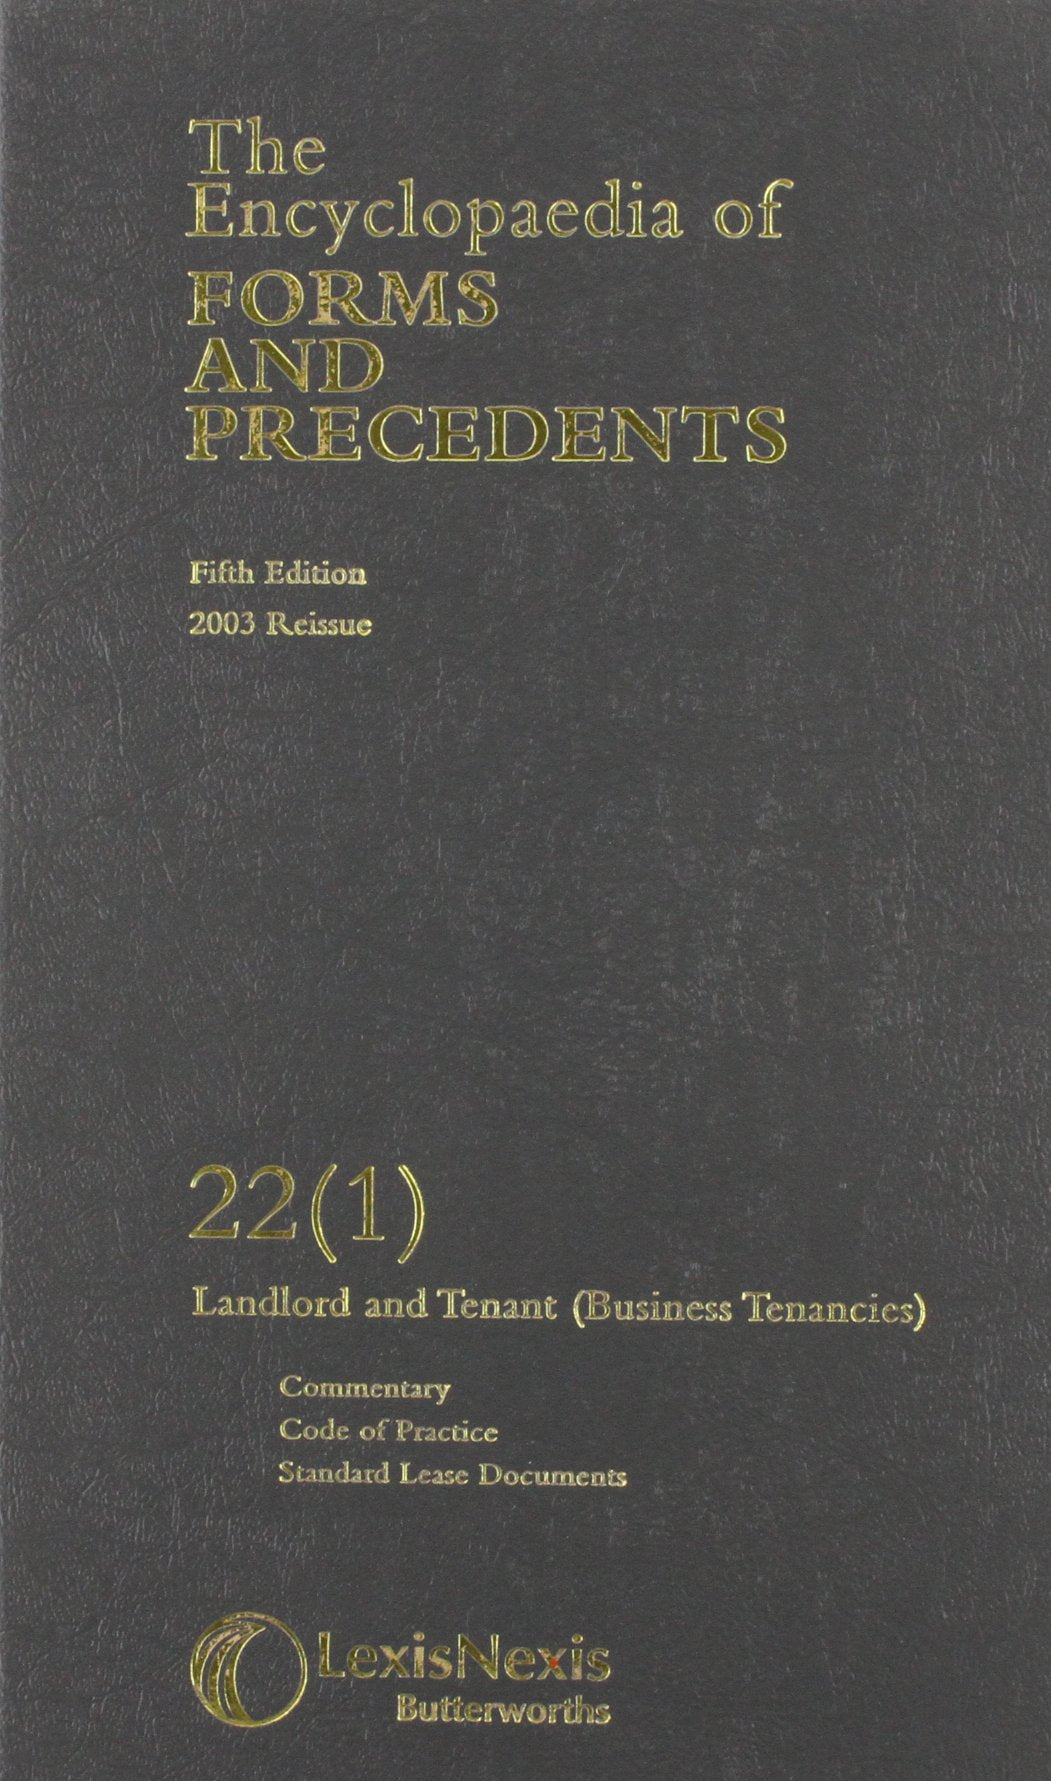 Encyclopaedia of Forms and Precedents 22(1)